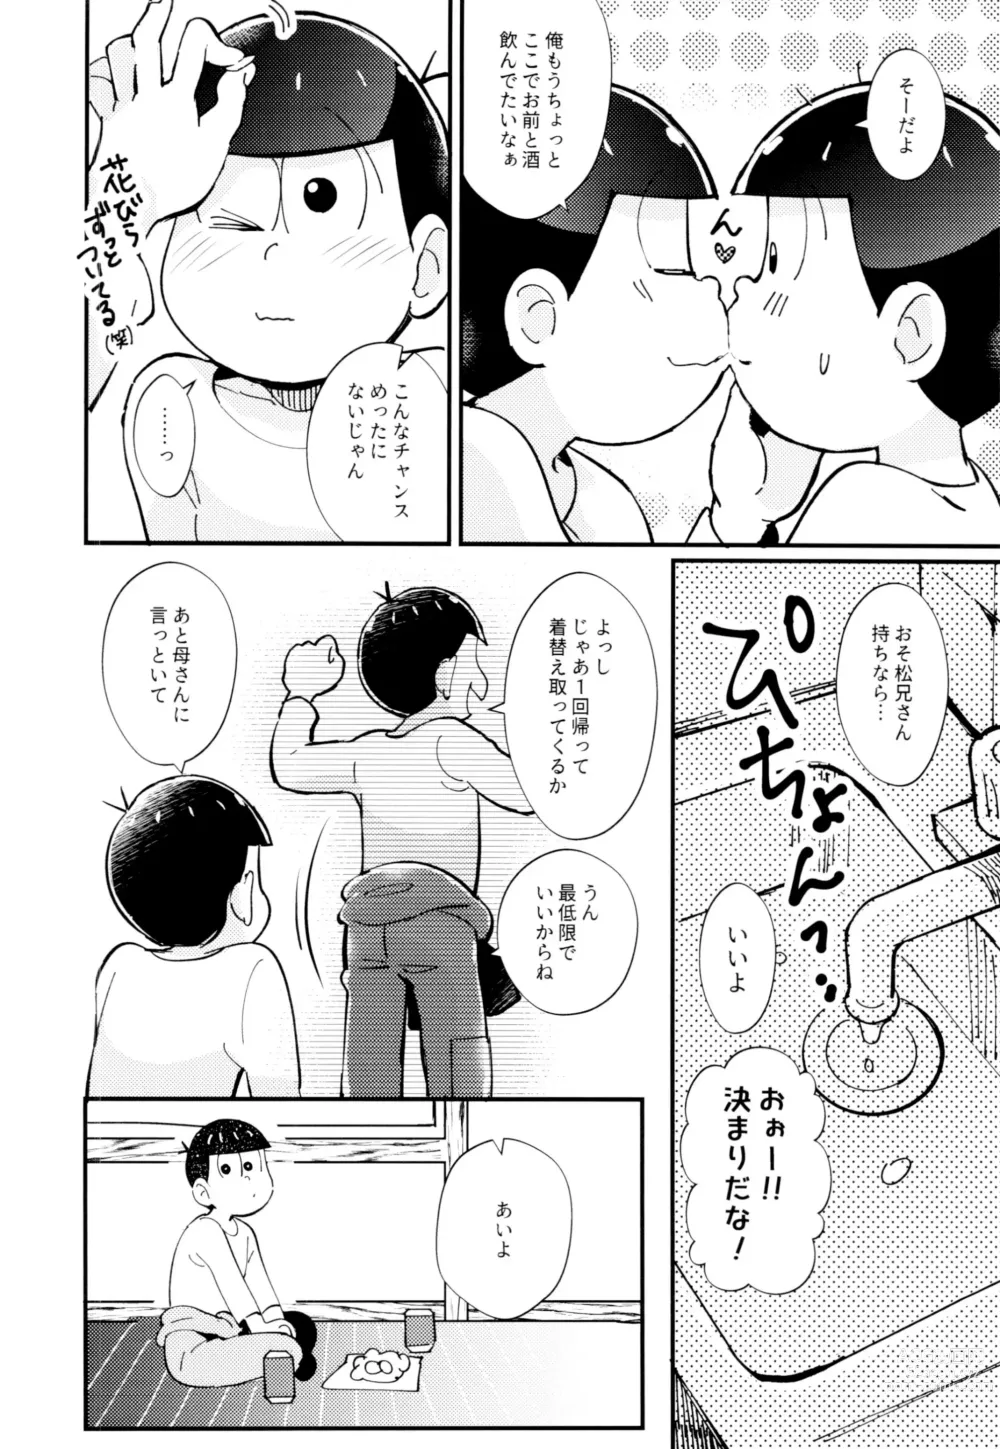 Page 16 of doujinshi 2-haku 3-kka, Kimi to Sakurasaku Apart de